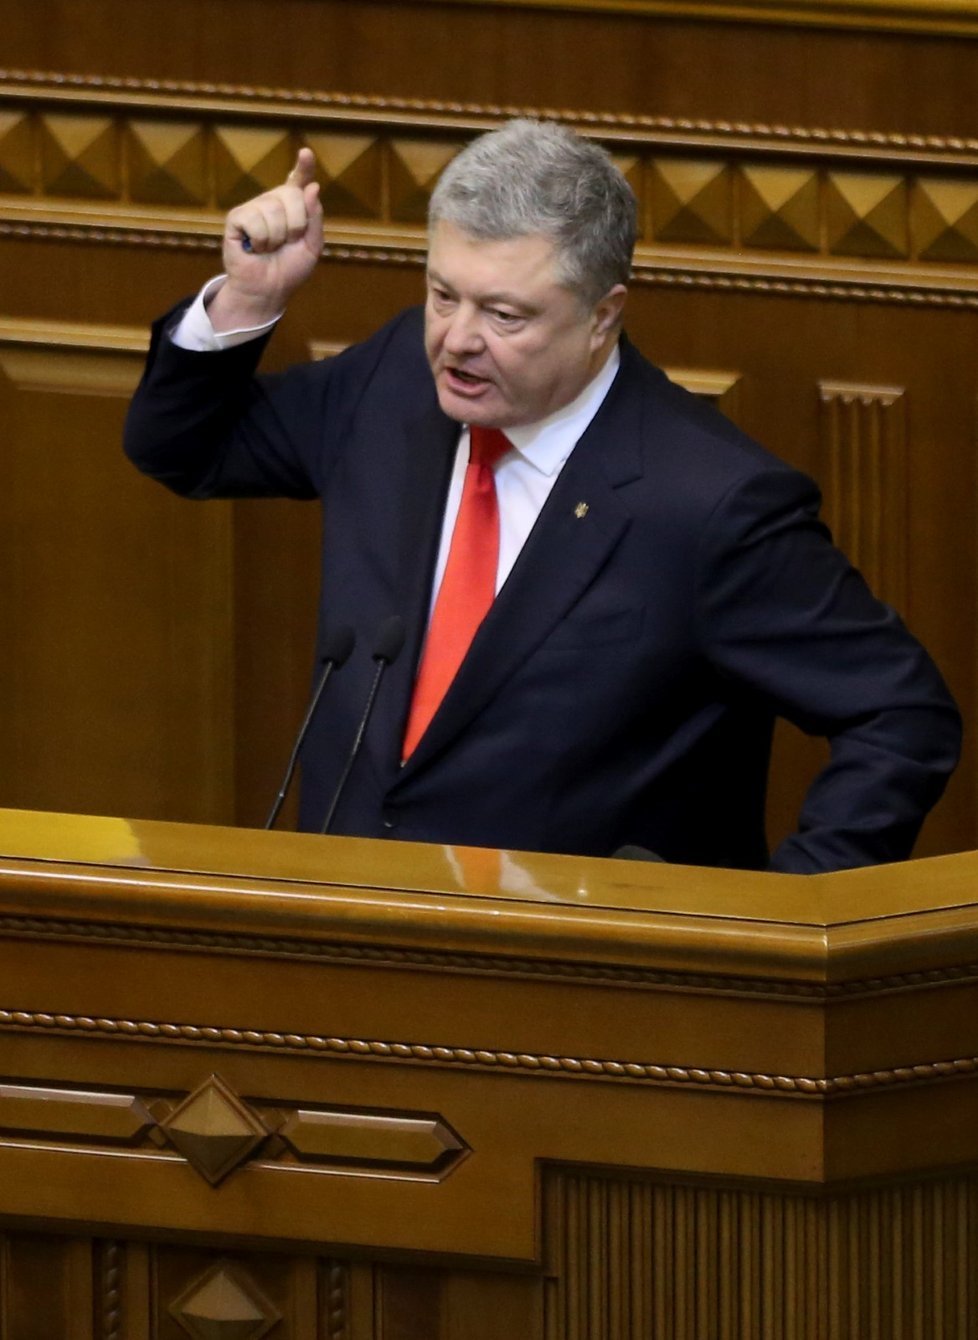 Kyjev žádá svět o pomoc proti ruské agresi, navrhuje další sankce. Na snímku prezident Petro Porošenko (26. 11. 2018)